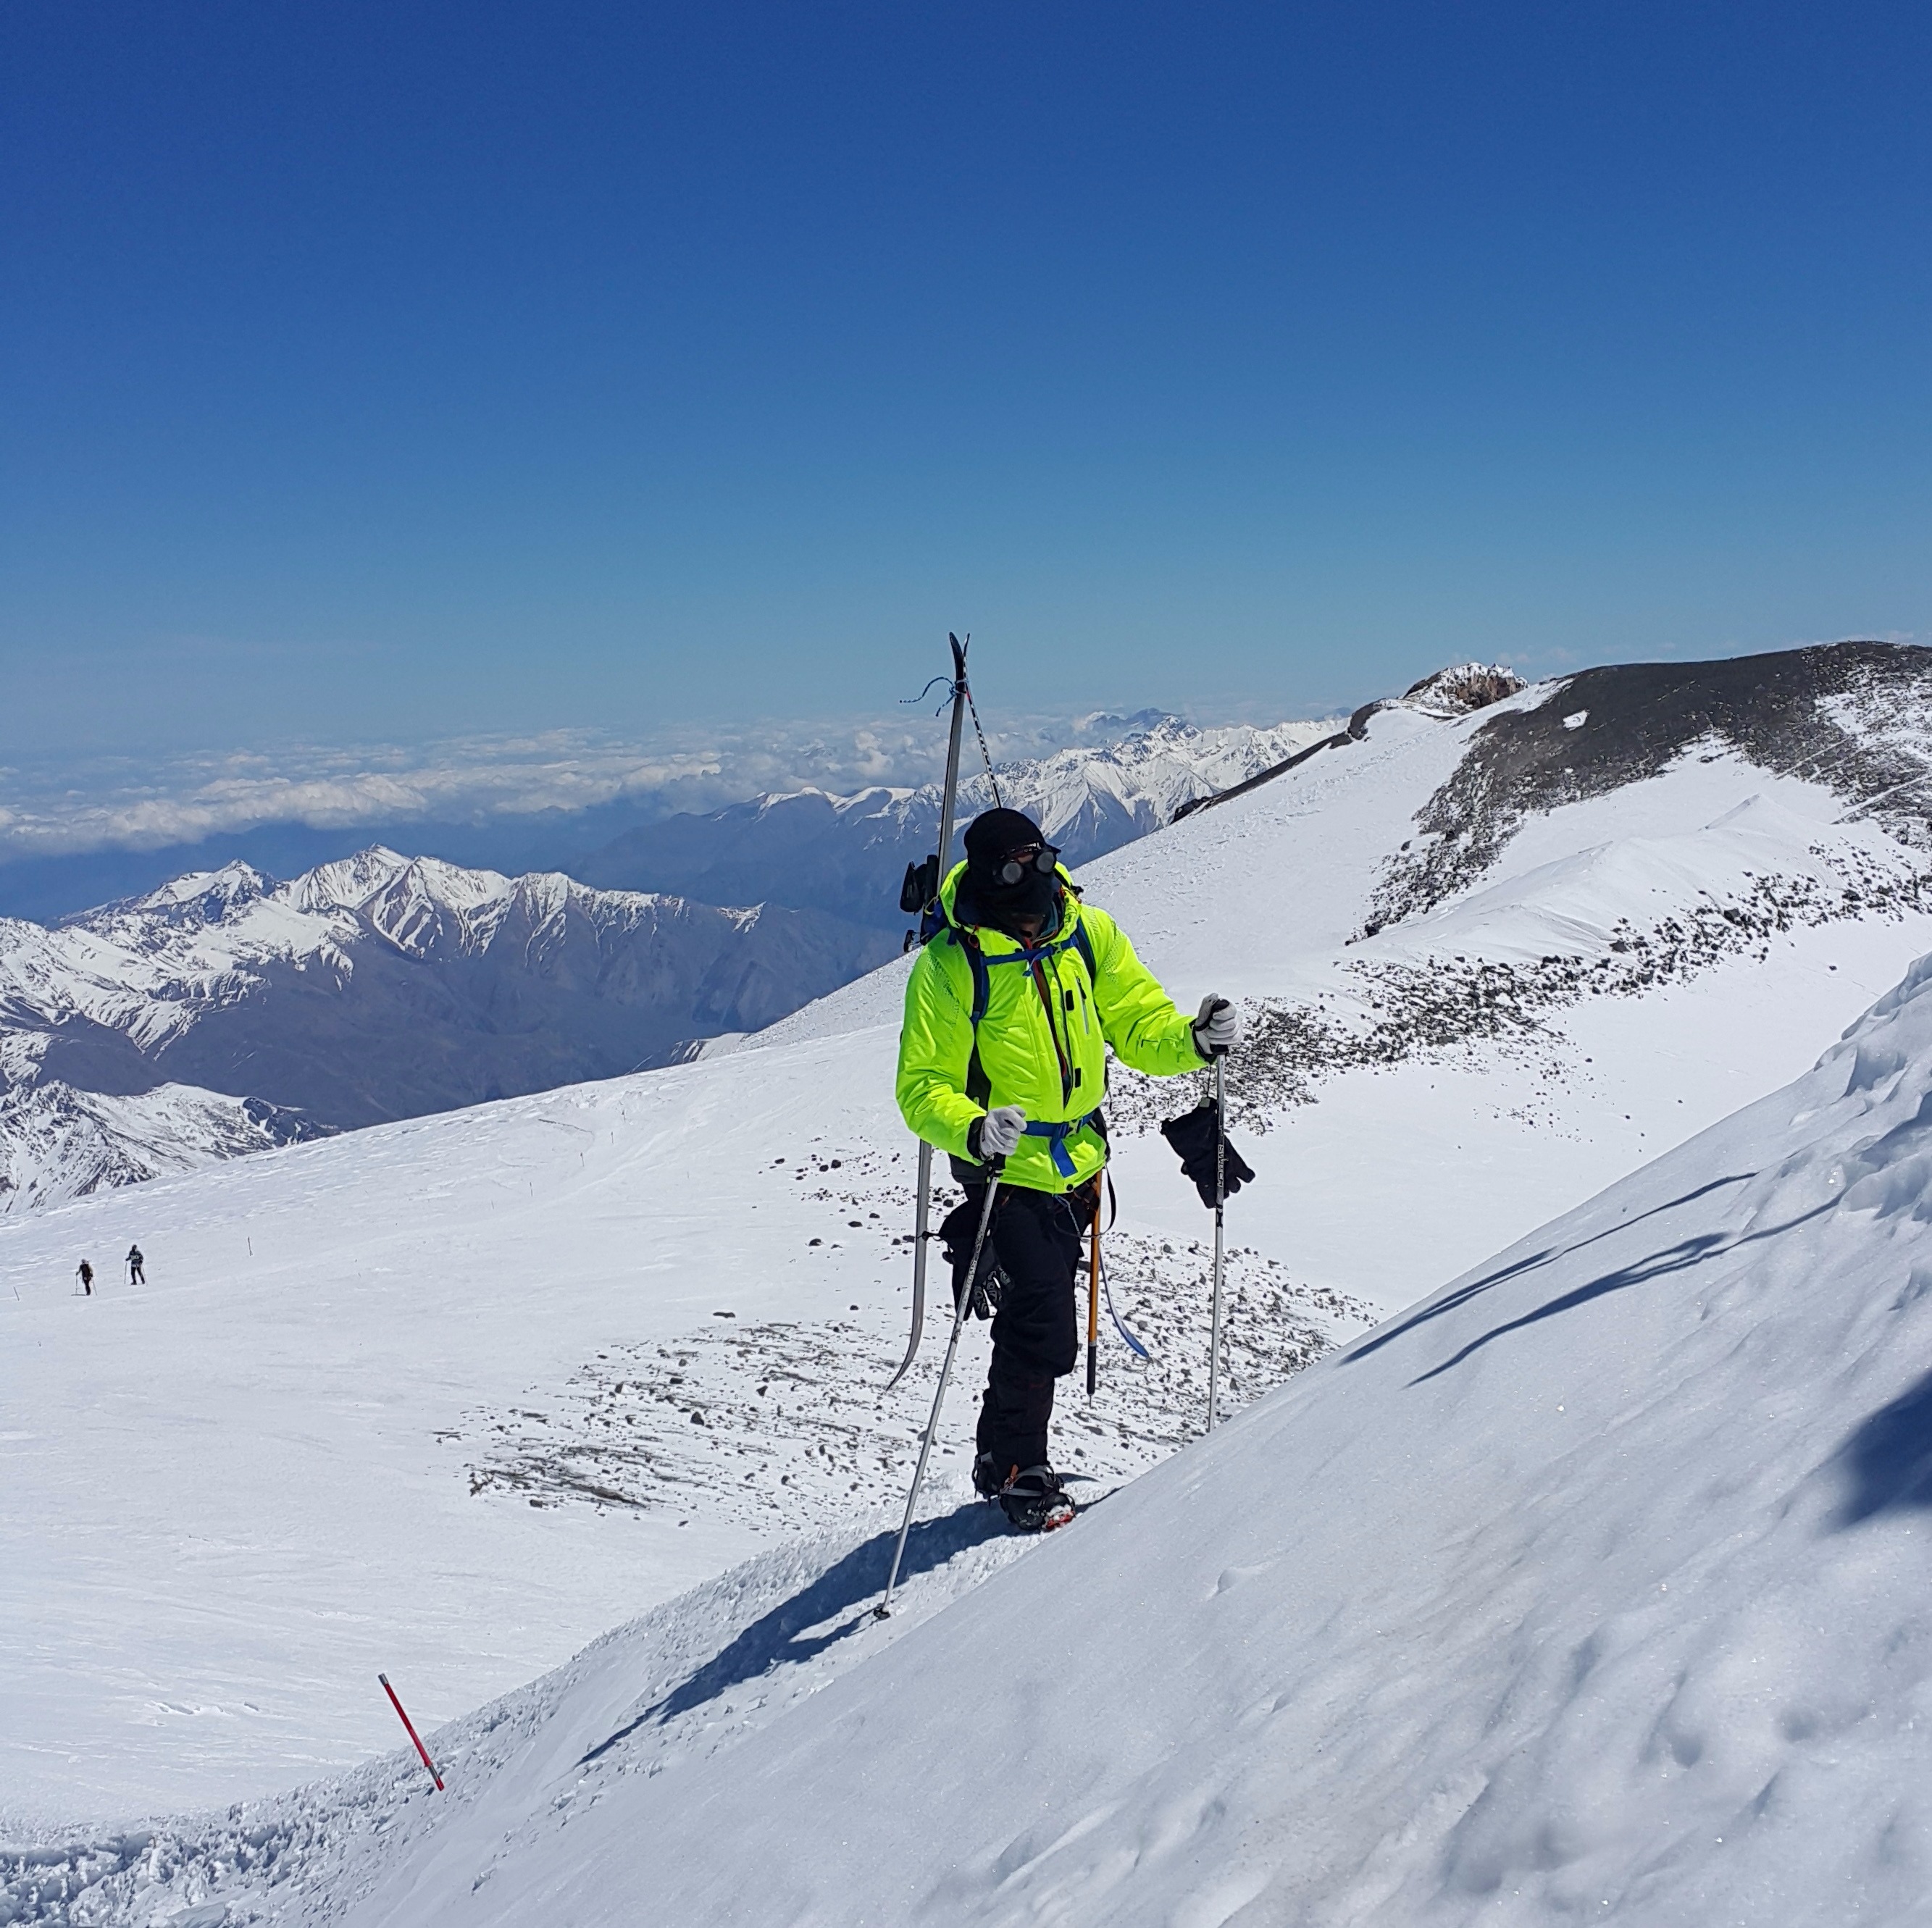 Эльбрус спуск. Эльбрус горнолыжный курорт спуск с горы. Терскол горнолыжный курорт. Эльбрус фрирайд. Эльбрус горнолыжка.